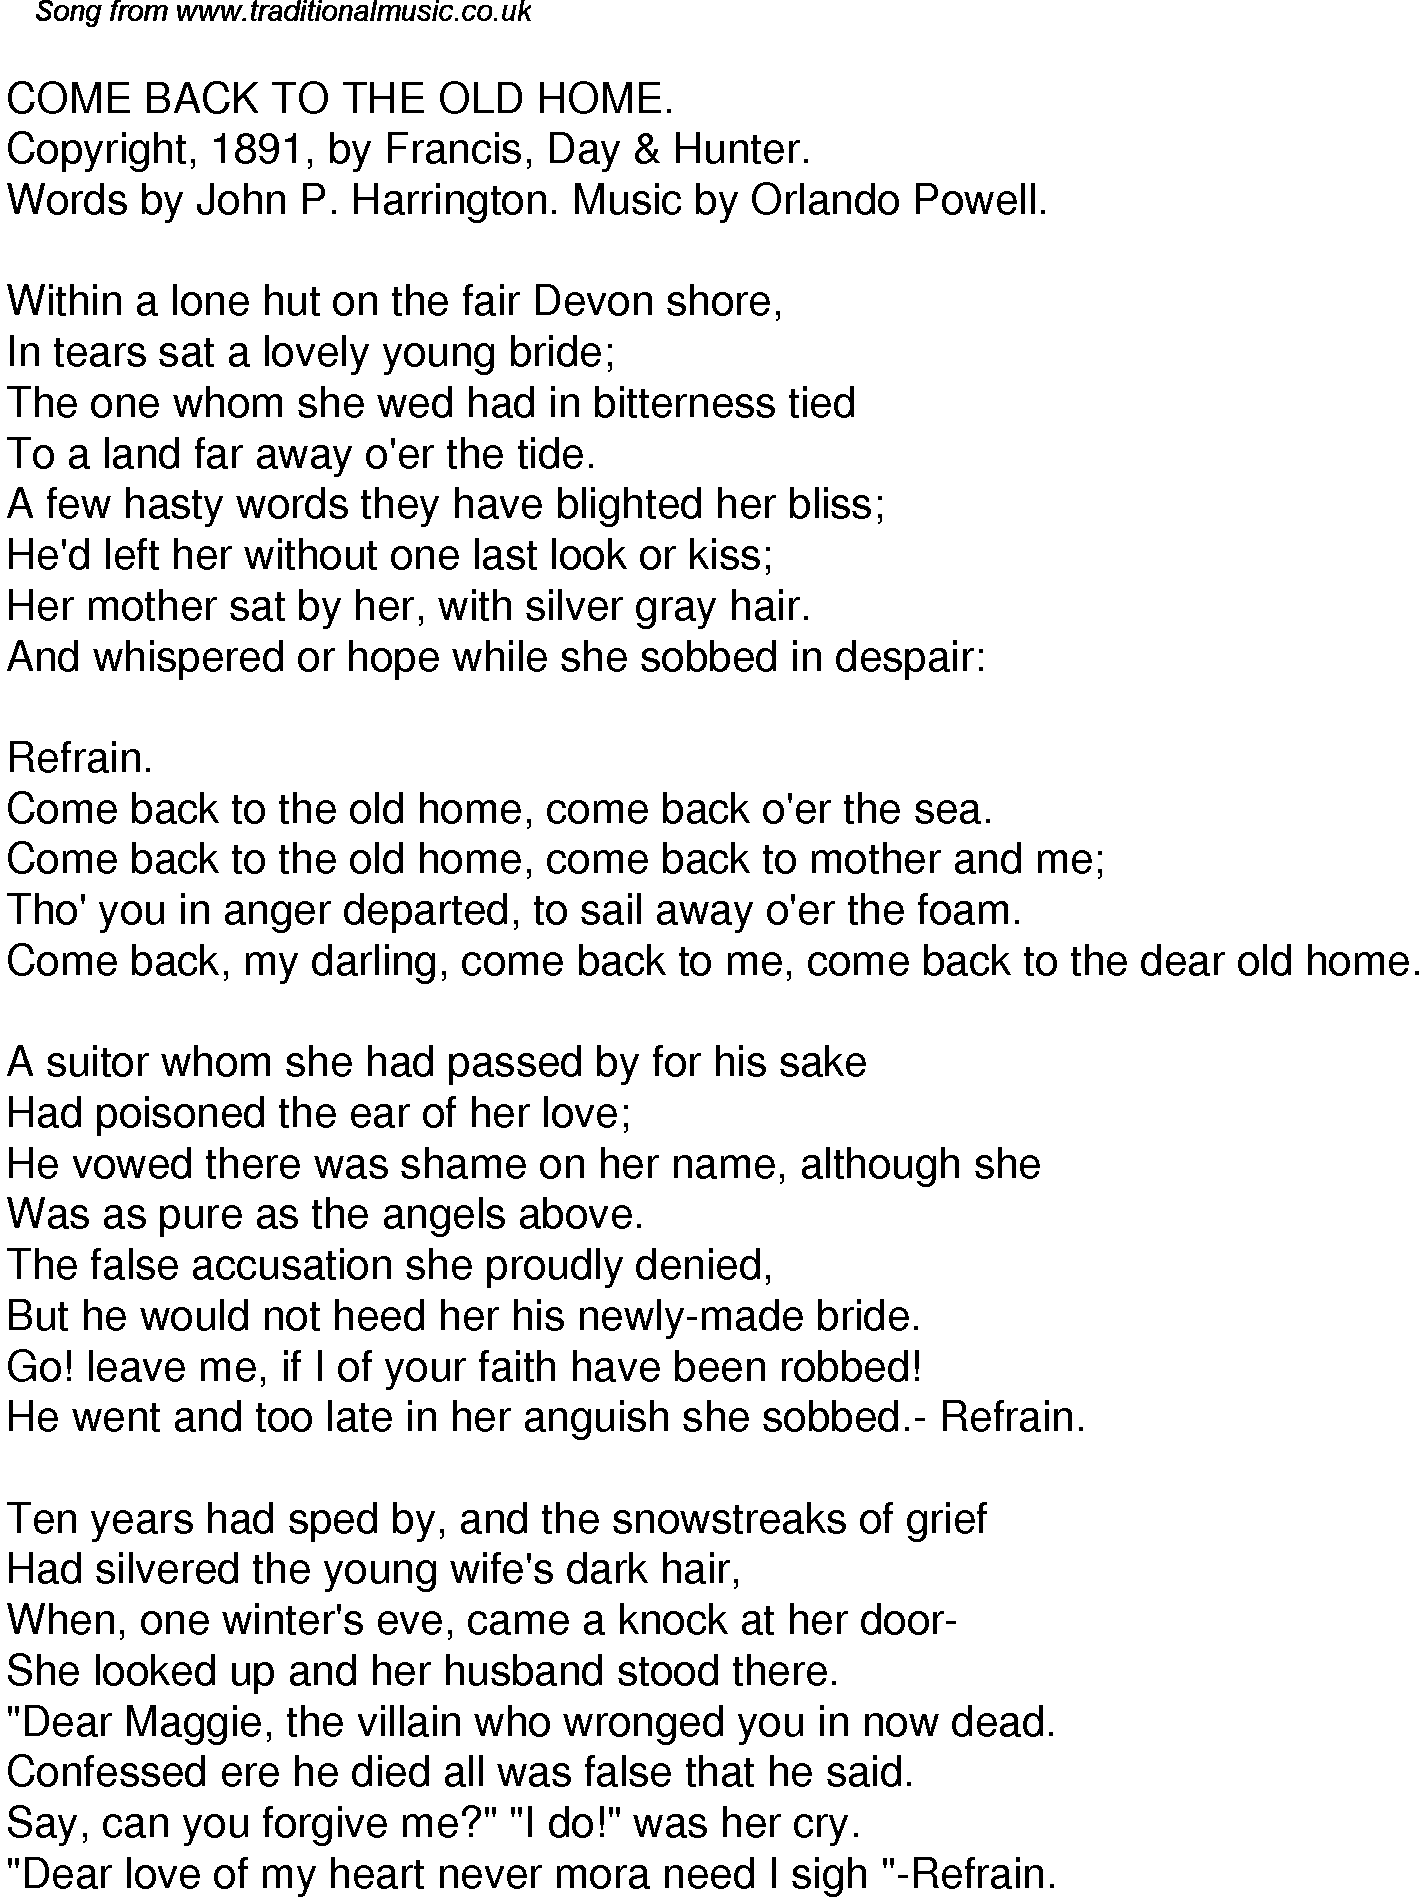 Back песня перевод на русский